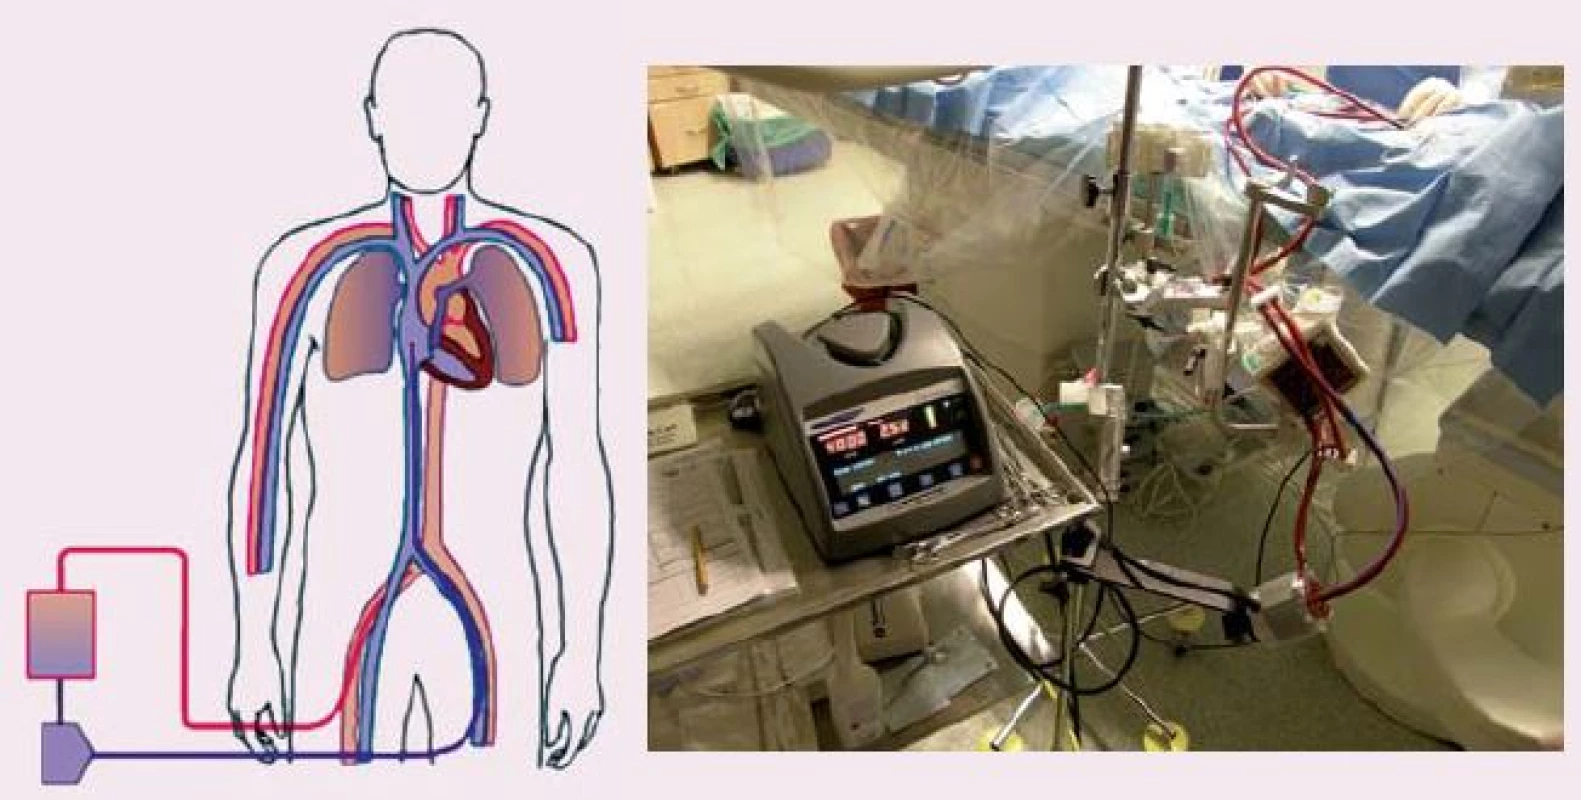 ECLS (extracorporeal life support), schéma zapojení (vlevo), krevní pumpa Levitronix s oxygenátorem (vpravo).